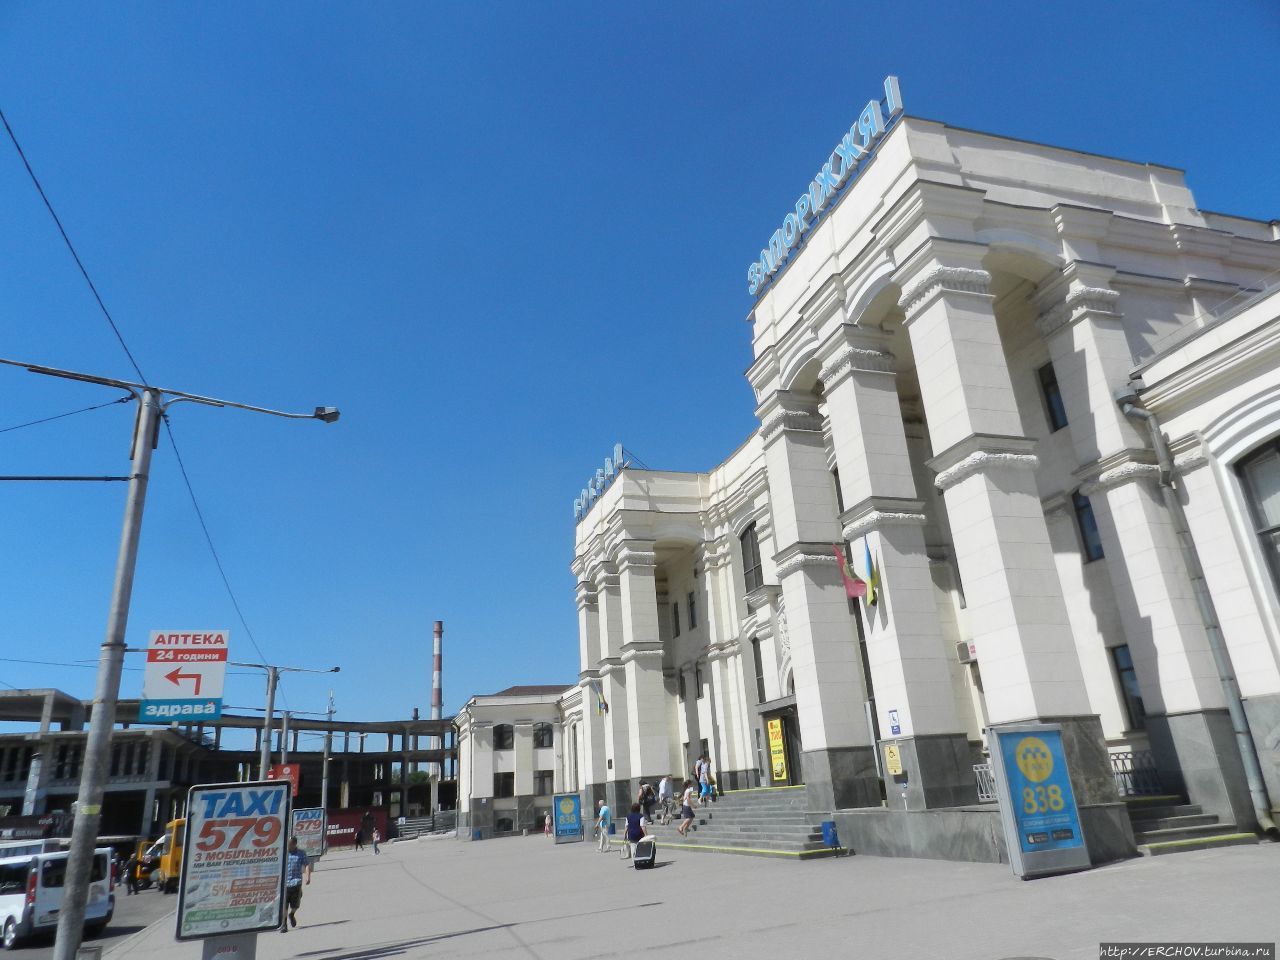 Запорожский вокзал Запорожье, Украина